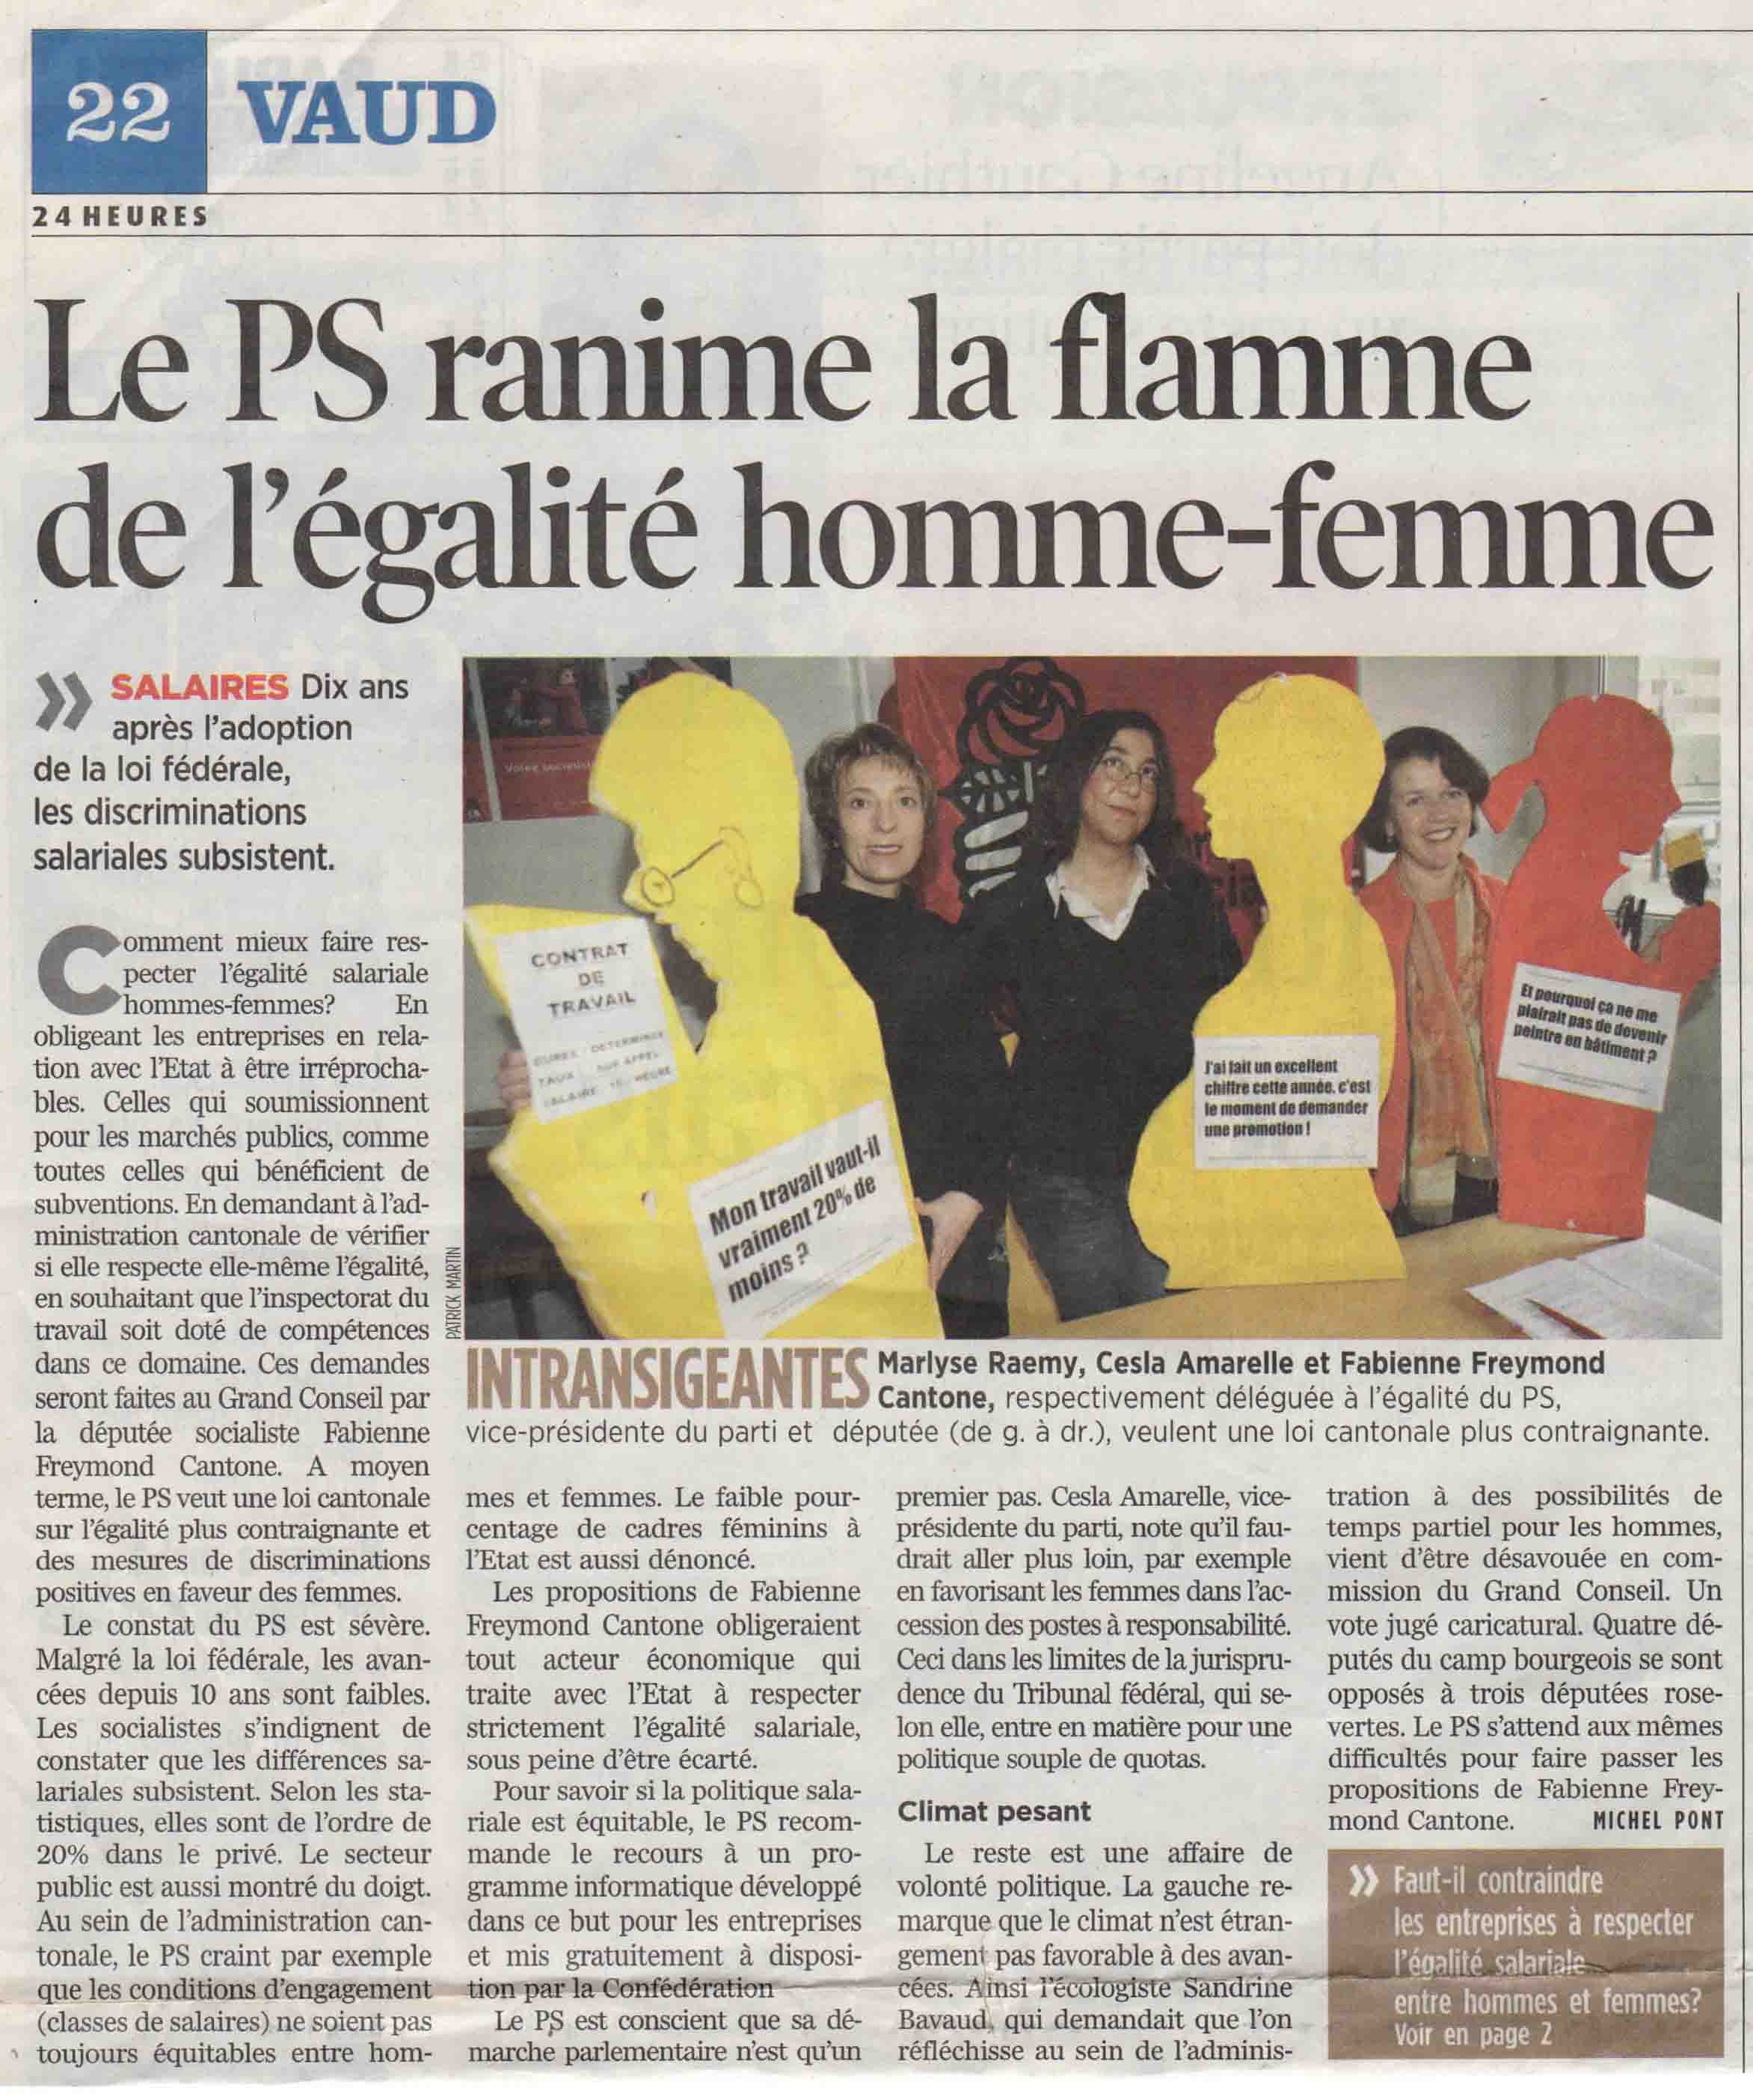 2006-12-08 24 Heures - Le PS et l'égalité homme-femme